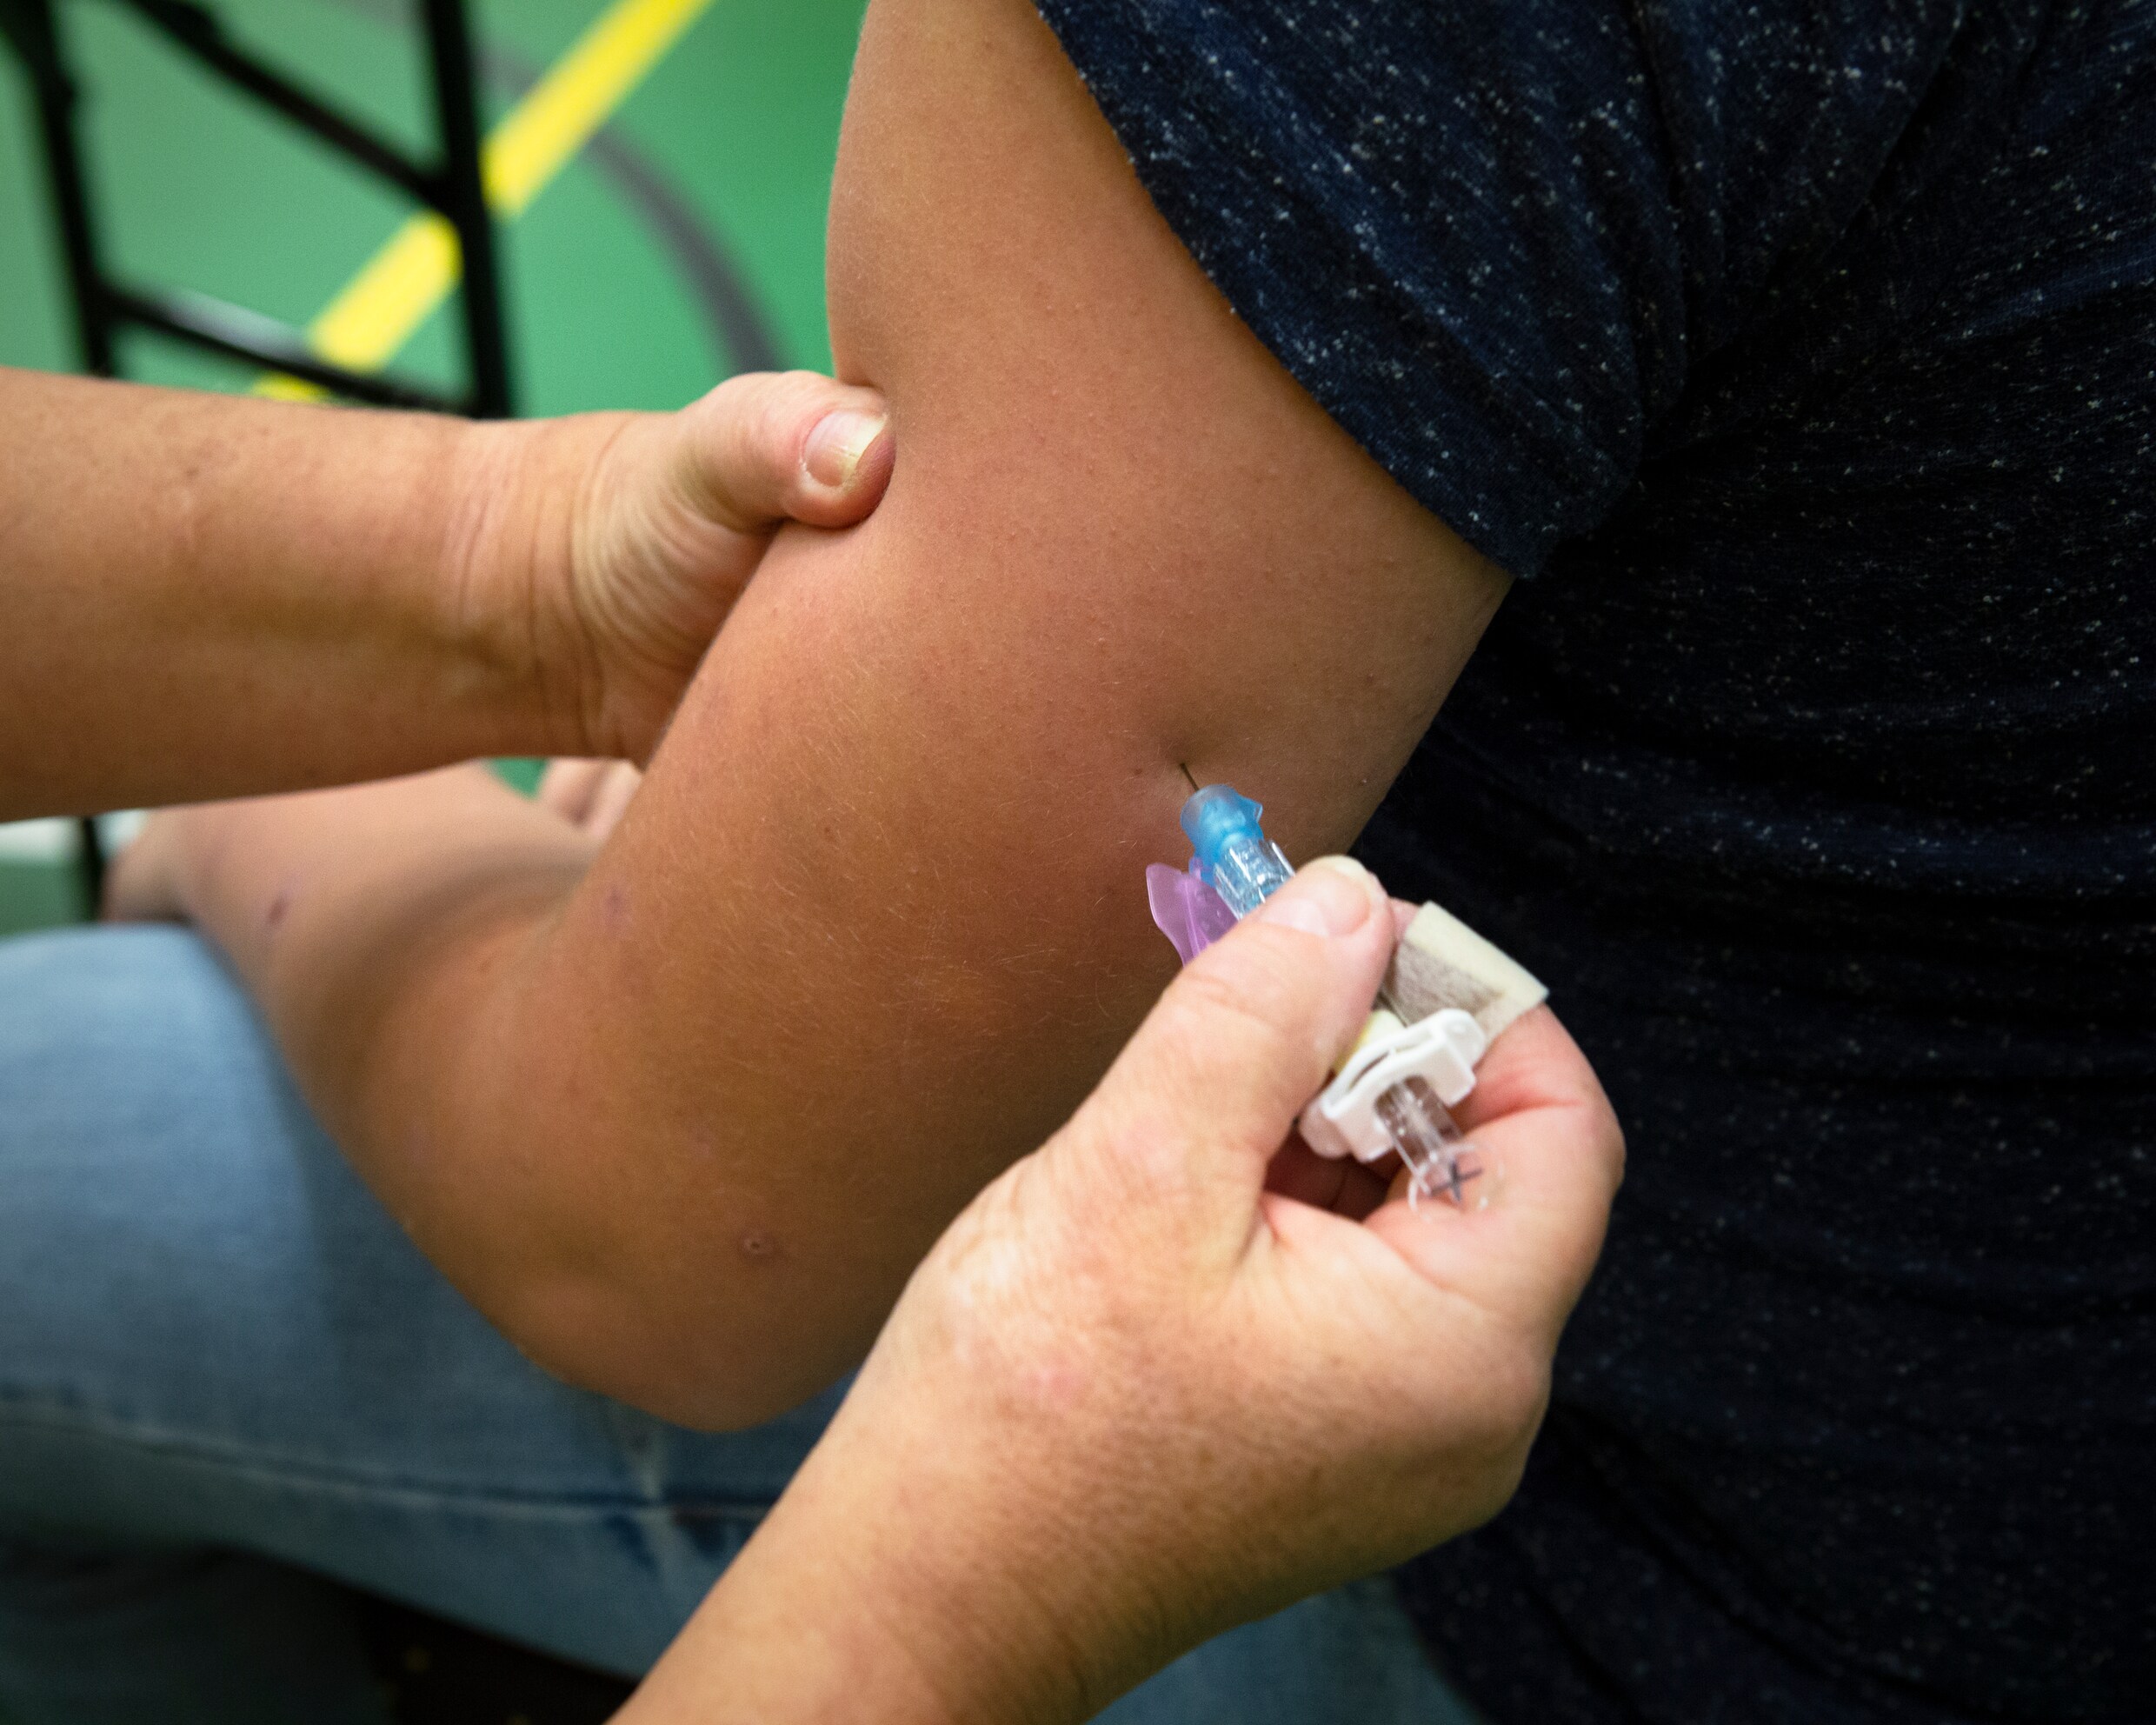 Staatssecretaris Blokhuis: daling vaccinatiegraad zet niet door